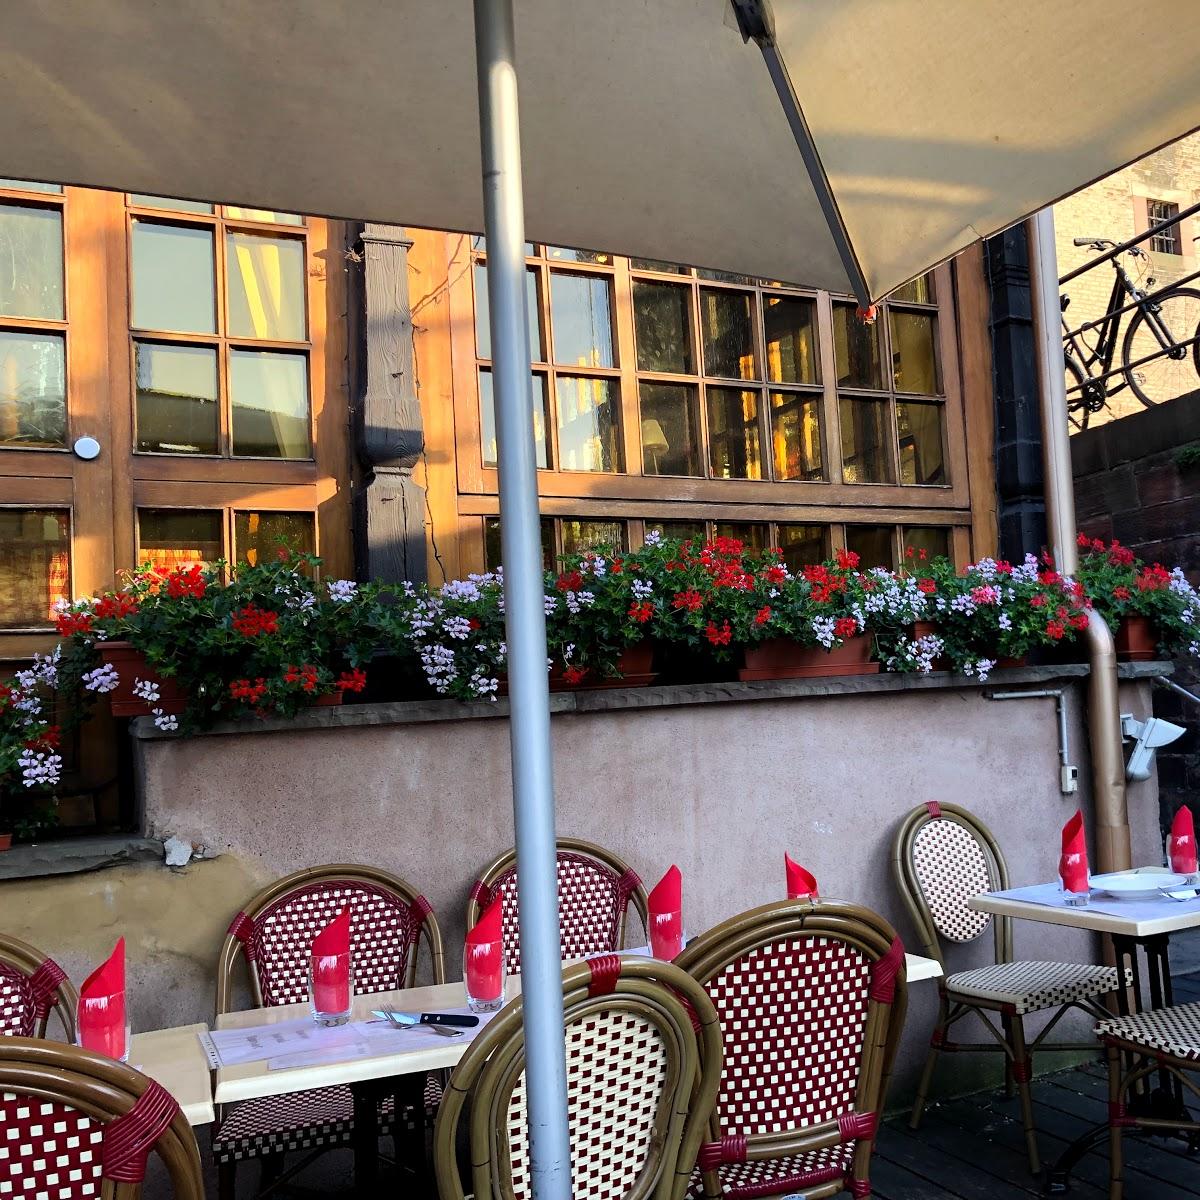 Restaurant "Marco Polo Restaurant" in Strasbourg